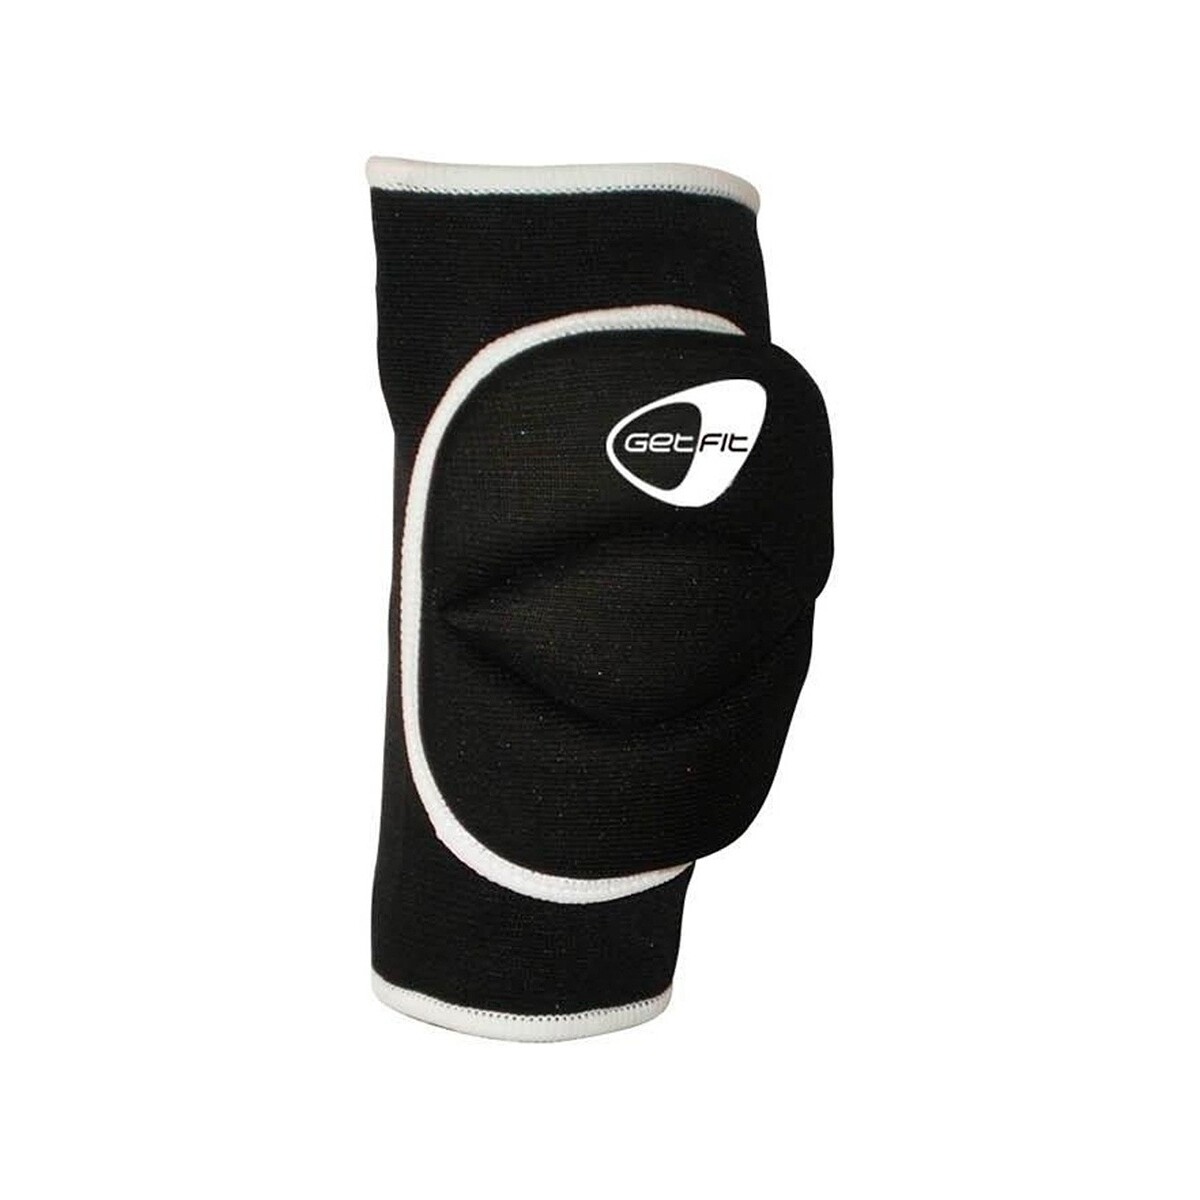 Accesorios Complemento para deporte Get Fit Volley knee pad Negro